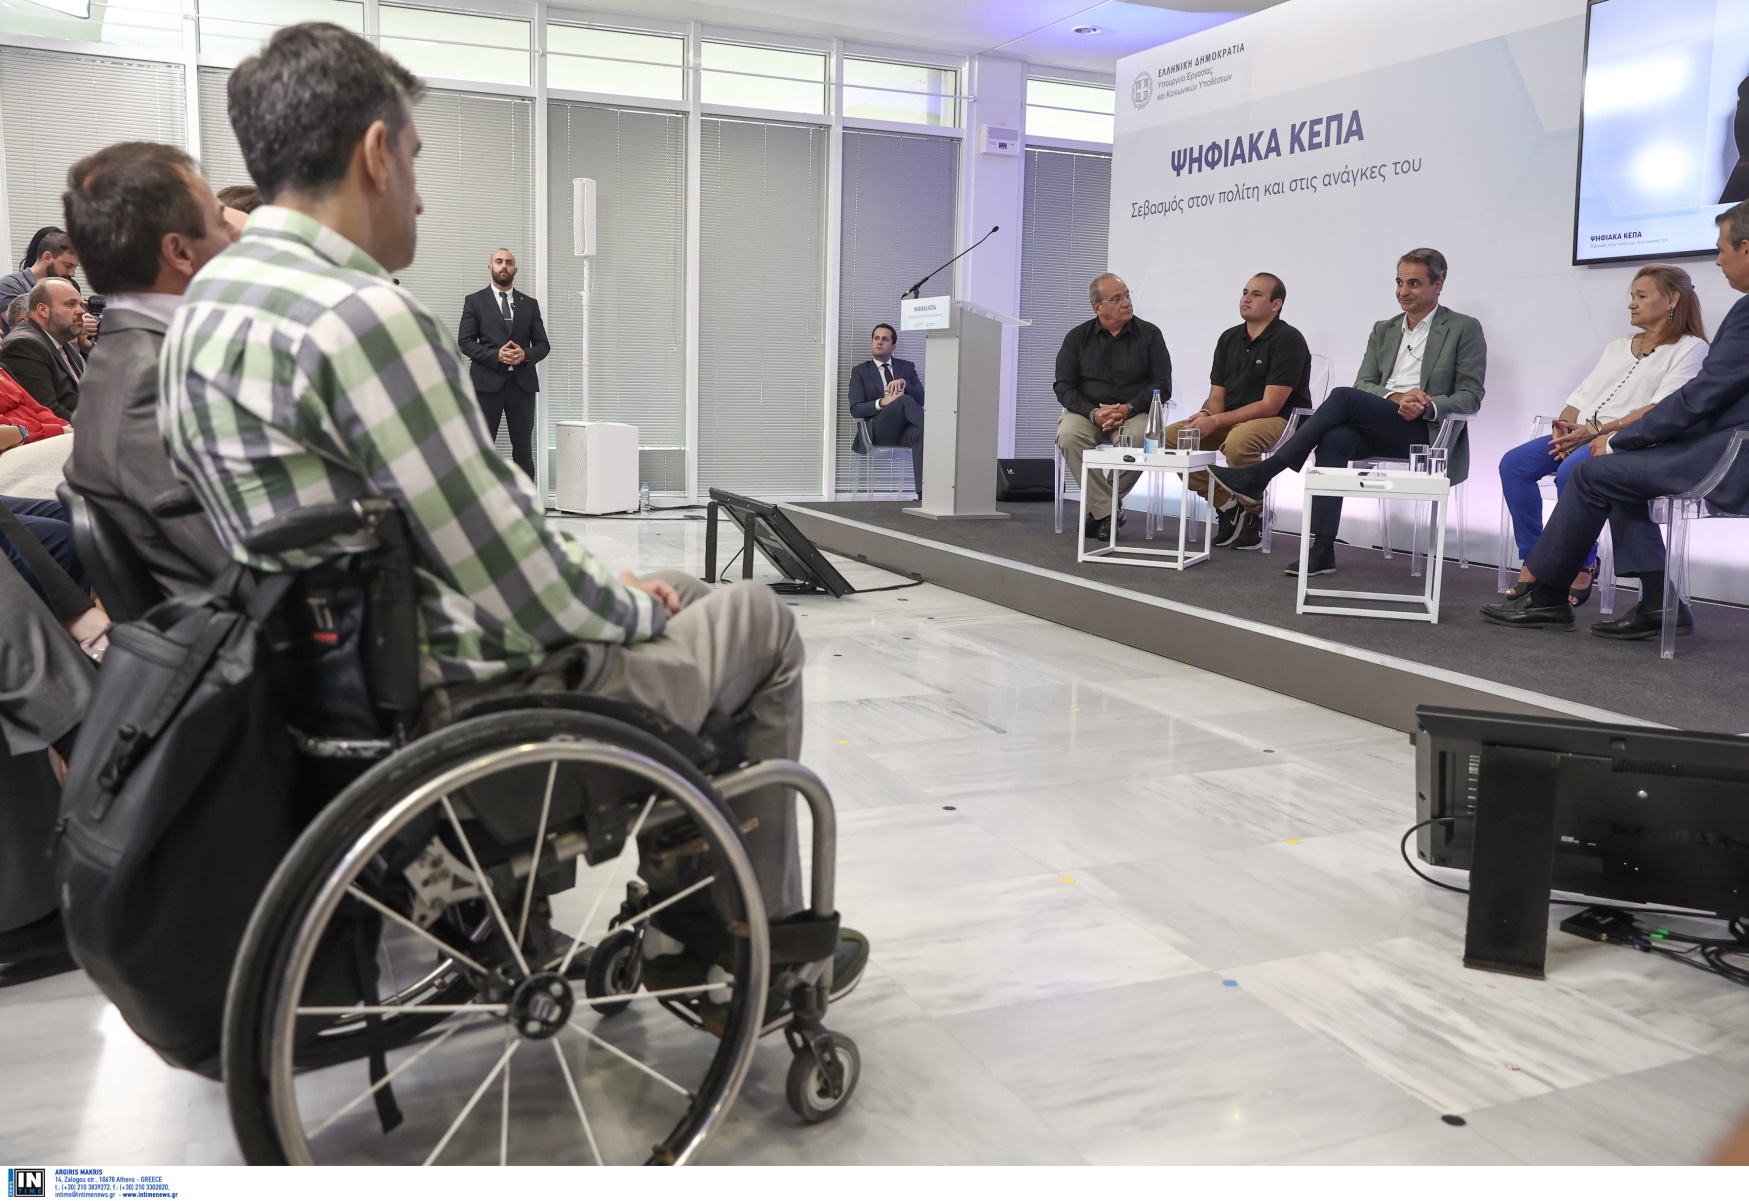 Μητσοτάκης στο αναπηρικό κίνημα: Πολιτική διαρκείας με διασφαλισμένους πόρους